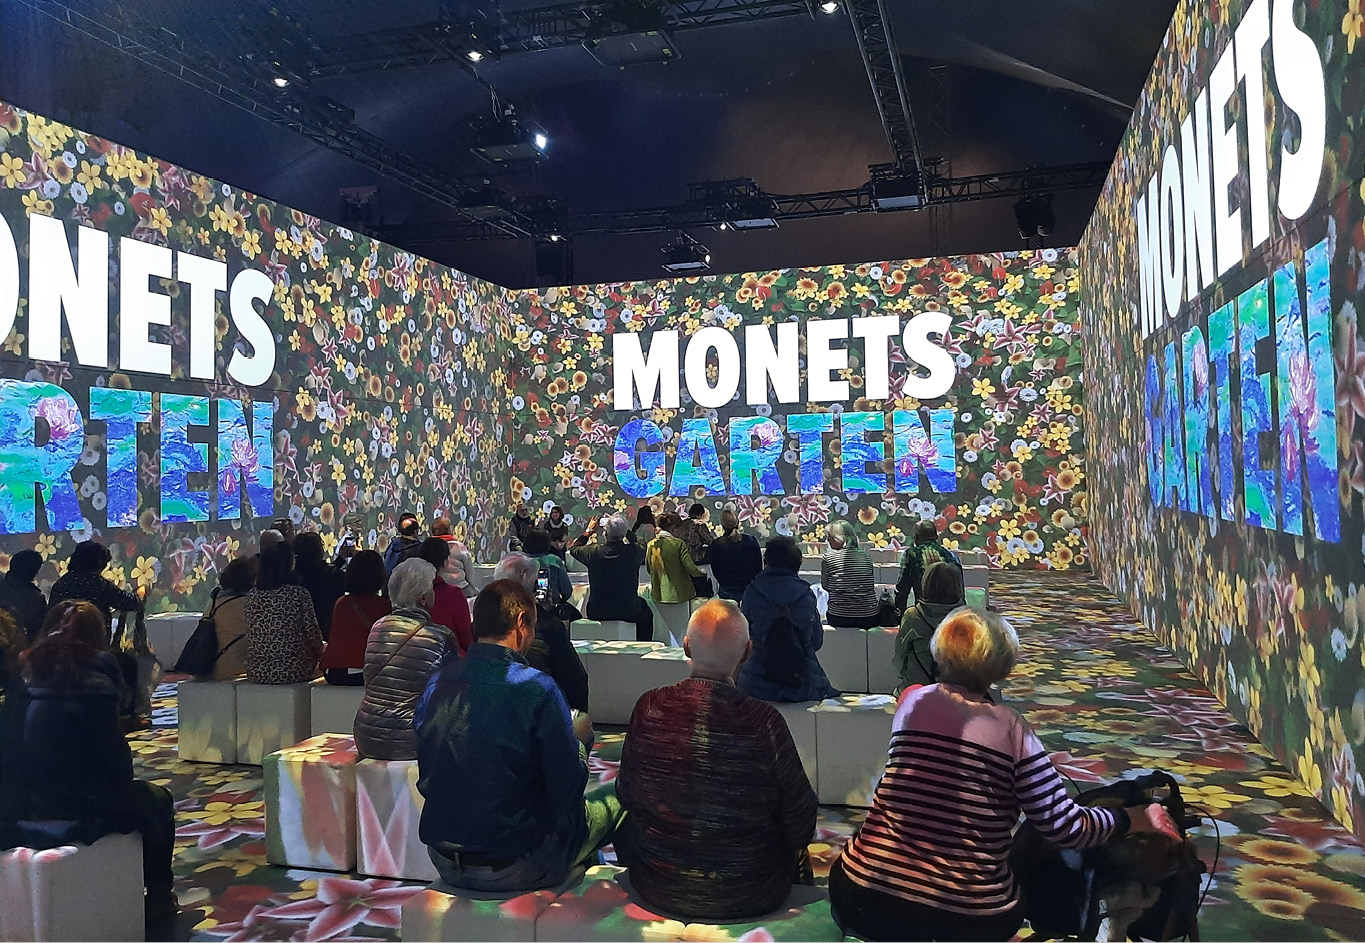 Monets Garten - Kunst zum Mitmachen und Erleben